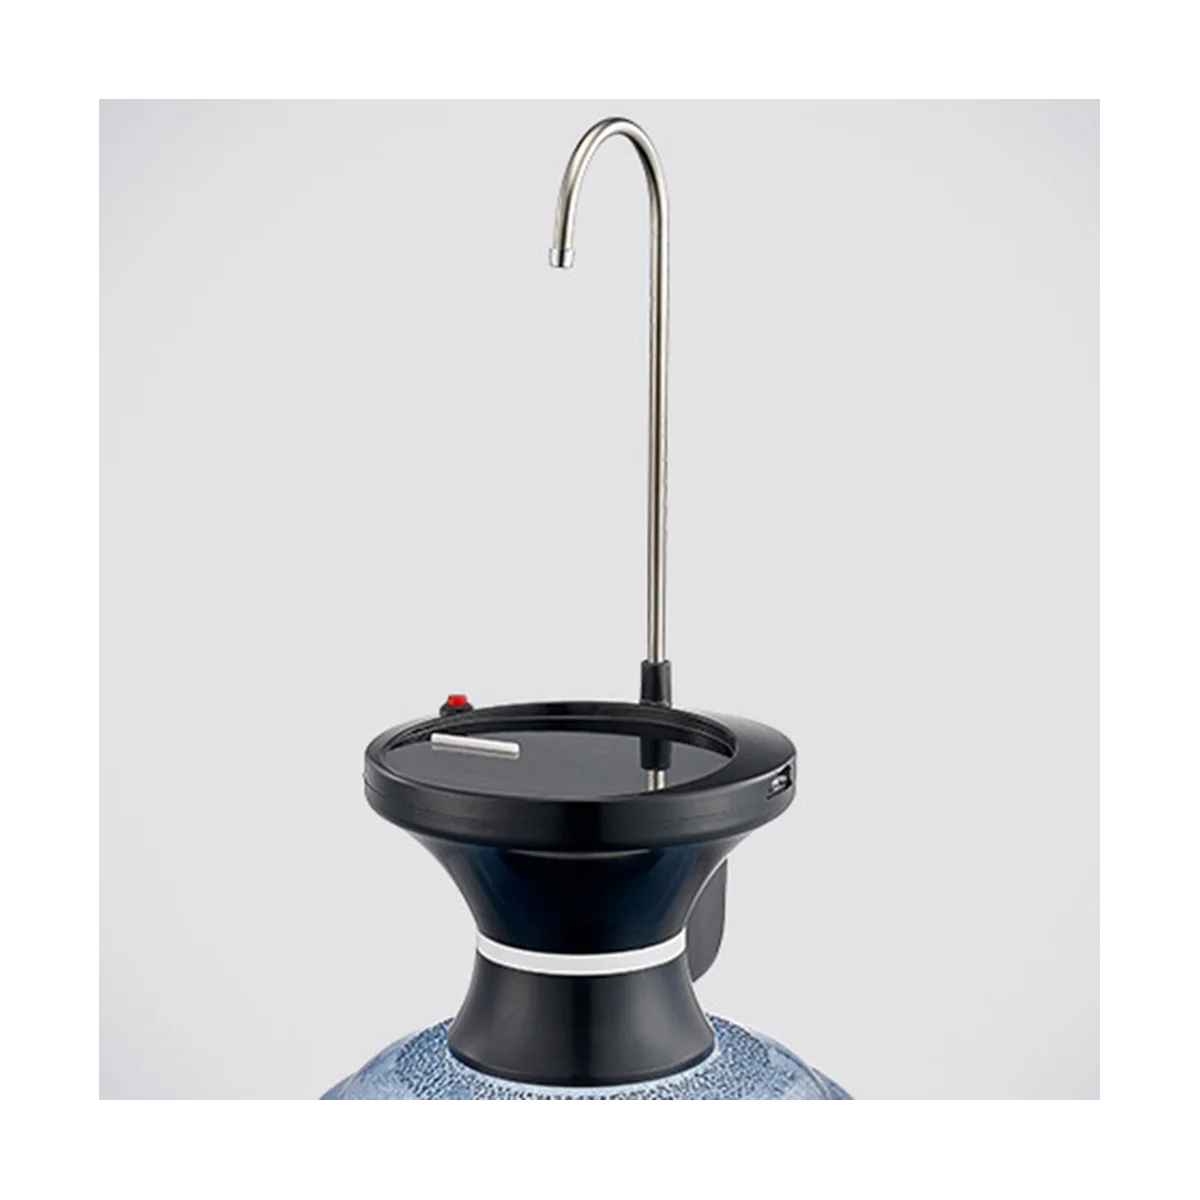 

Диспенсер для питьевой воды, автоматический Электрический диспенсер для питьевой воды, USB Перезаряжаемый с 2 переключателями управления